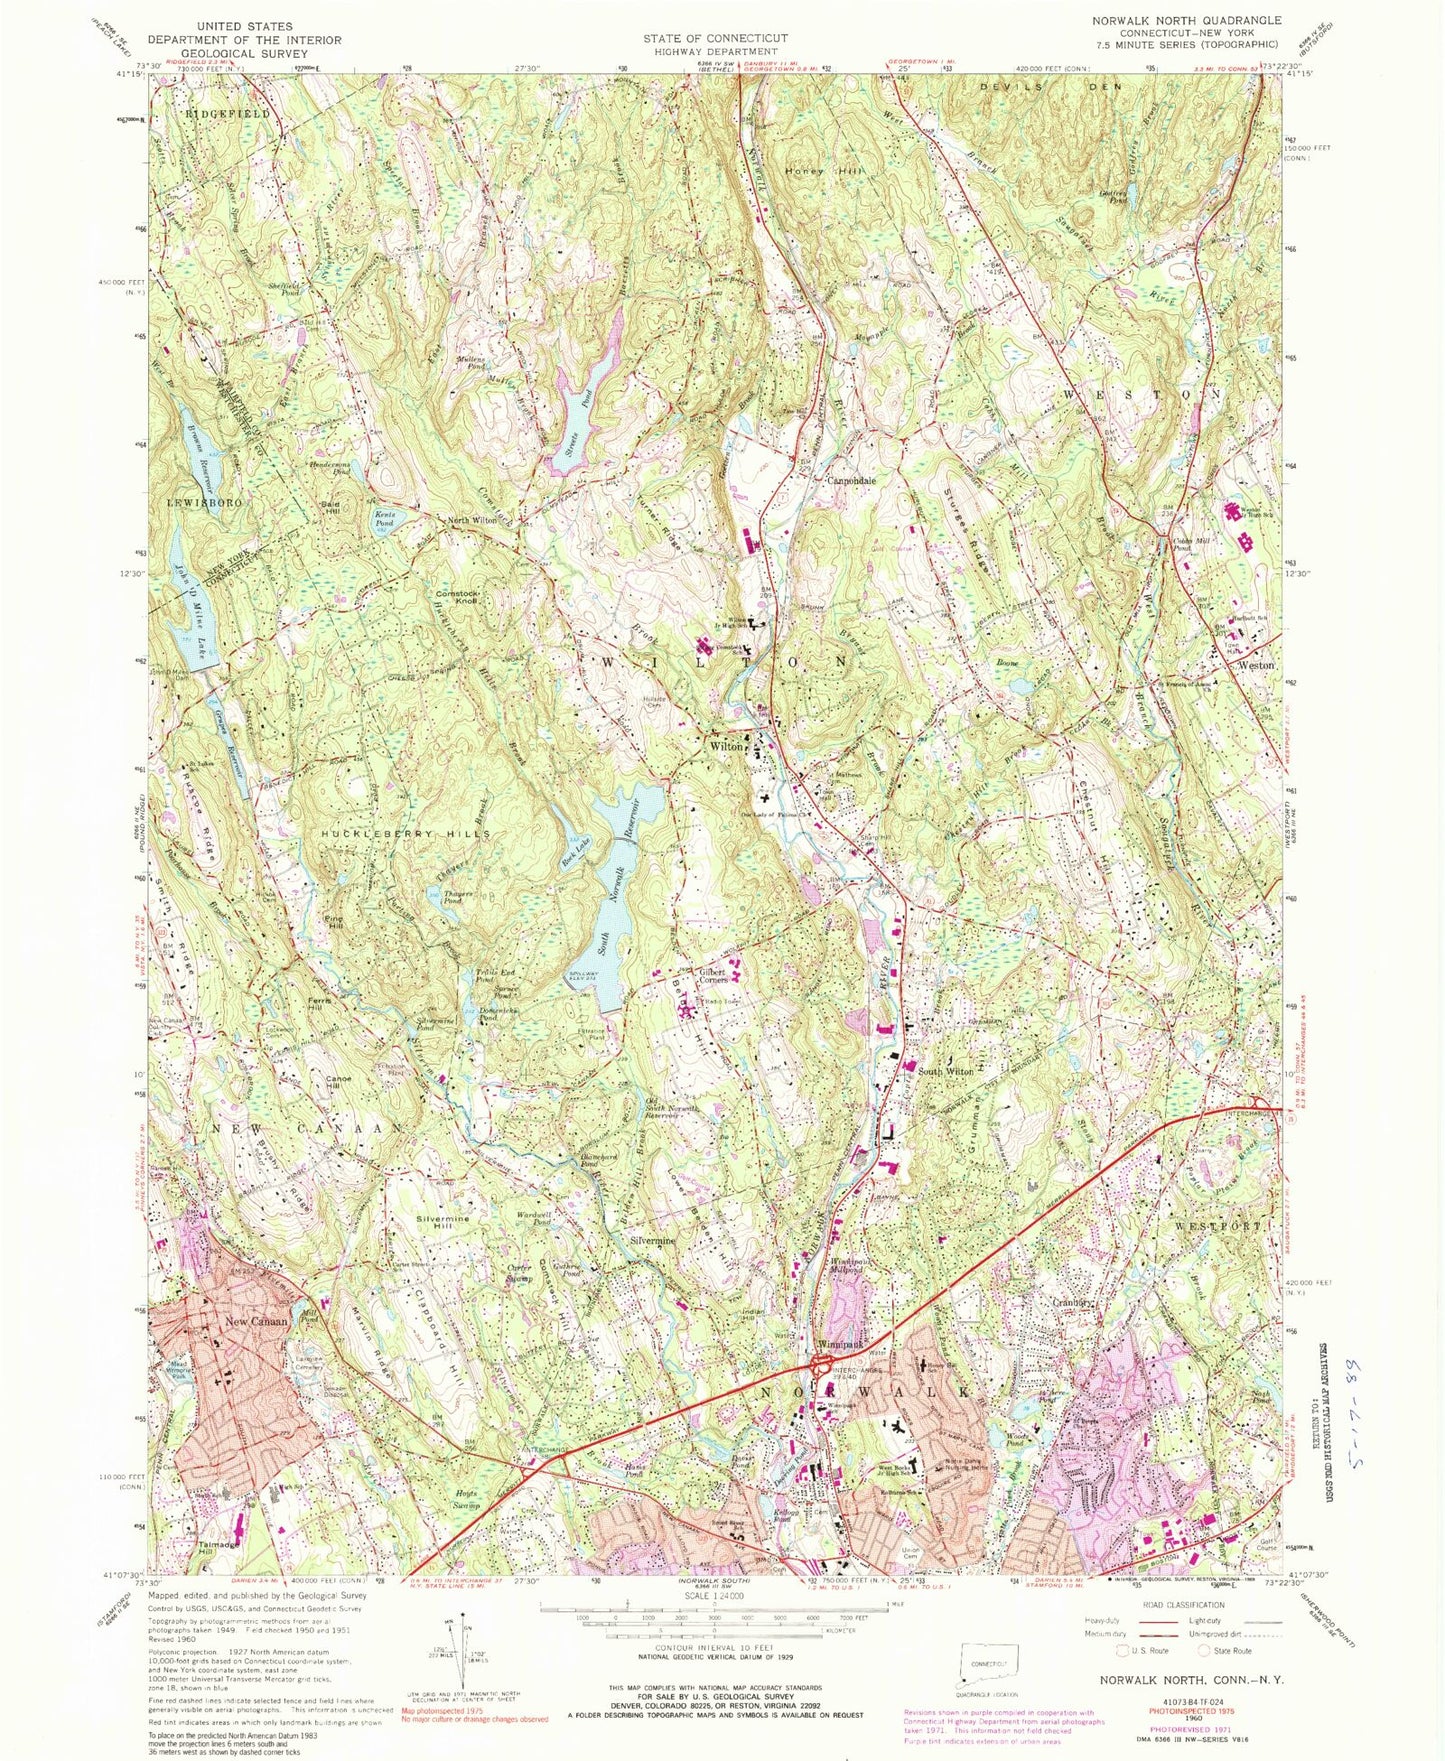 Classic USGS Norwalk North Connecticut 7.5'x7.5' Topo Map Image